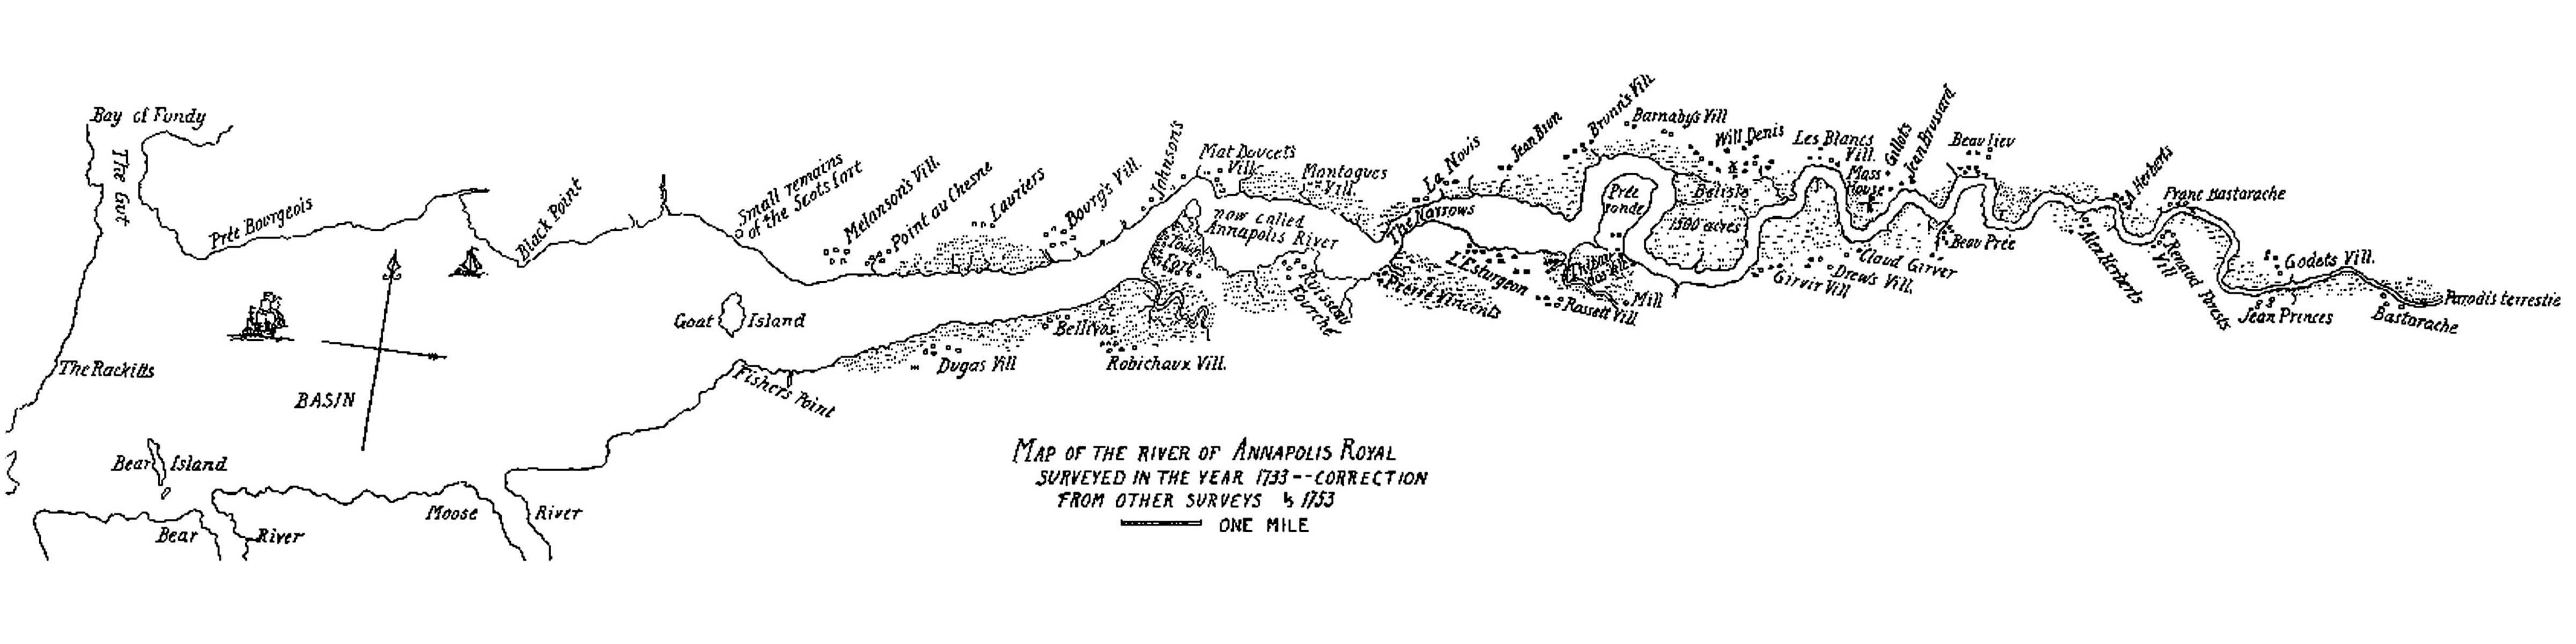 annapolis royal survey map 1733 002